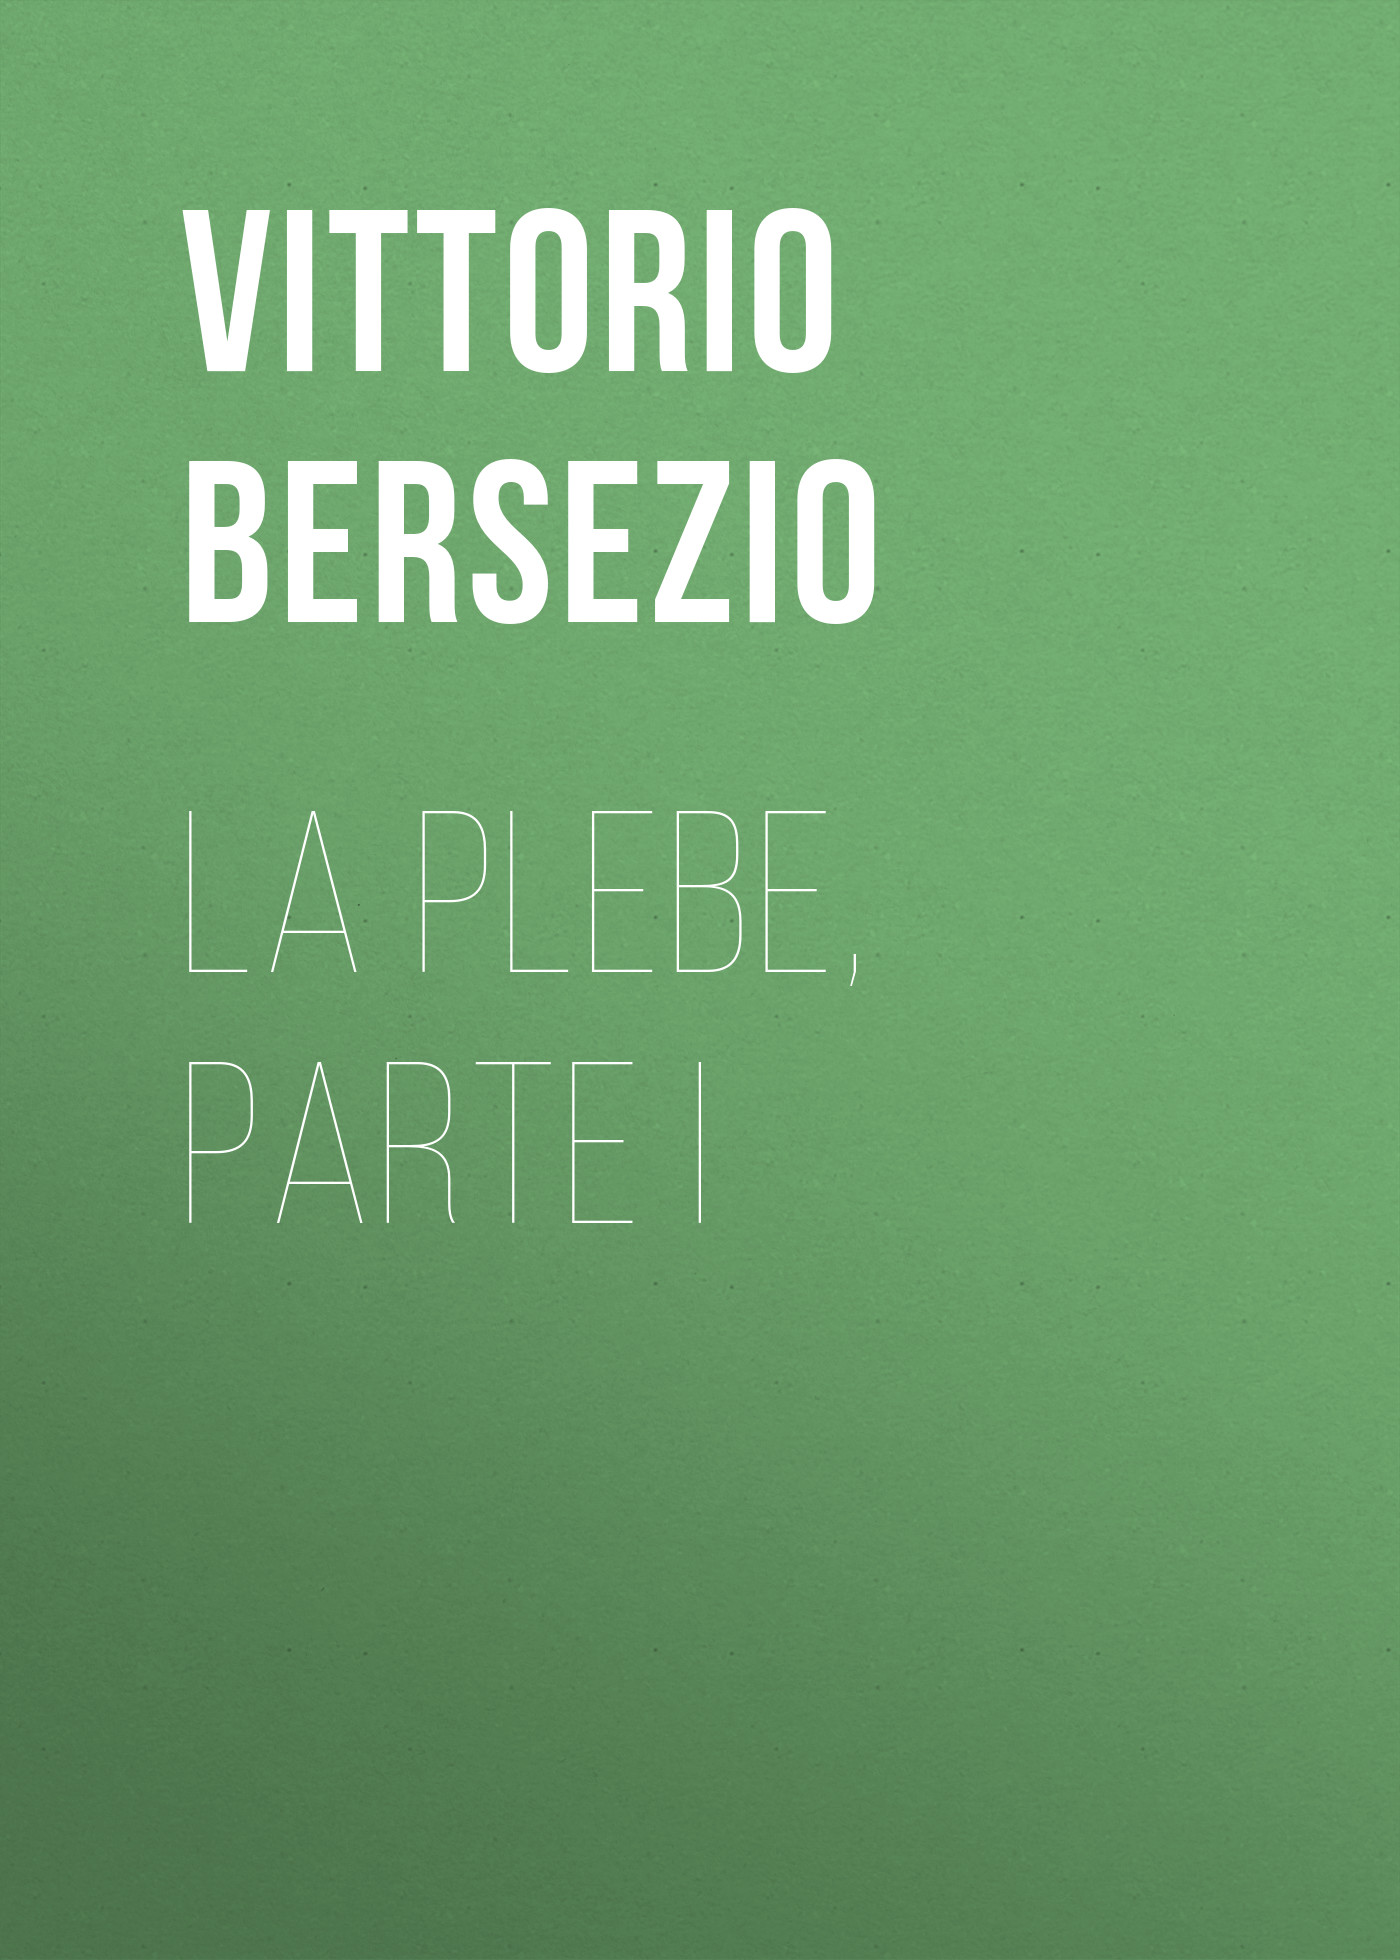 Книга La plebe, parte I из серии , созданная Vittorio Bersezio, может относится к жанру Зарубежная старинная литература, Зарубежная классика. Стоимость электронной книги La plebe, parte I с идентификатором 24178252 составляет 0 руб.